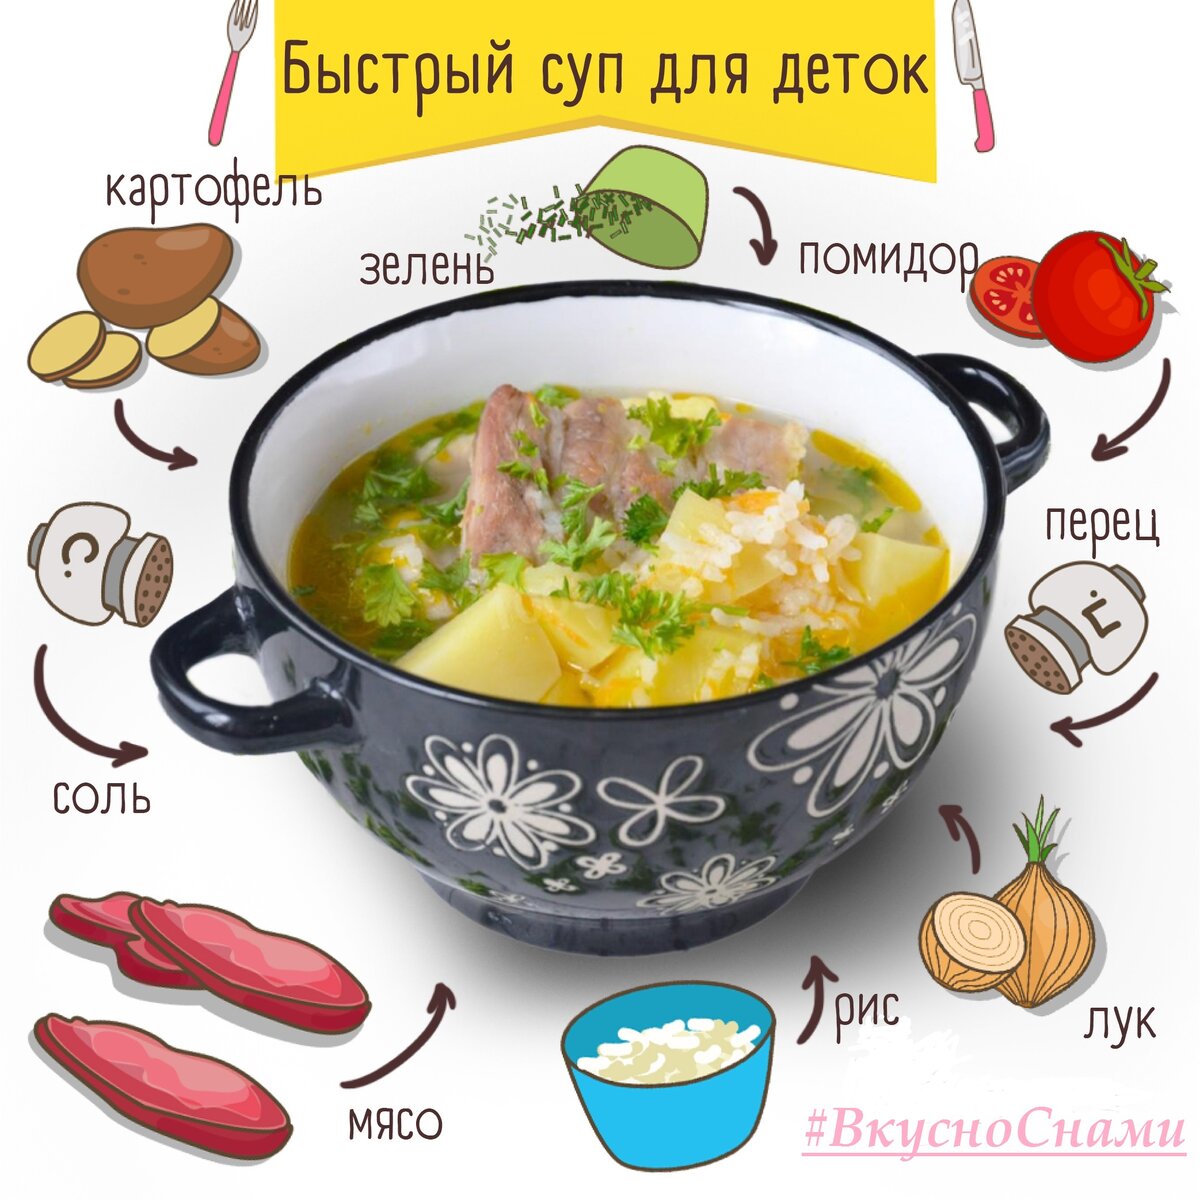 День супа картинки прикольные. Суп для детей. Рецепты супов в картинках. Рецепты супов для детей. Рецепт супа в картинках для детей.